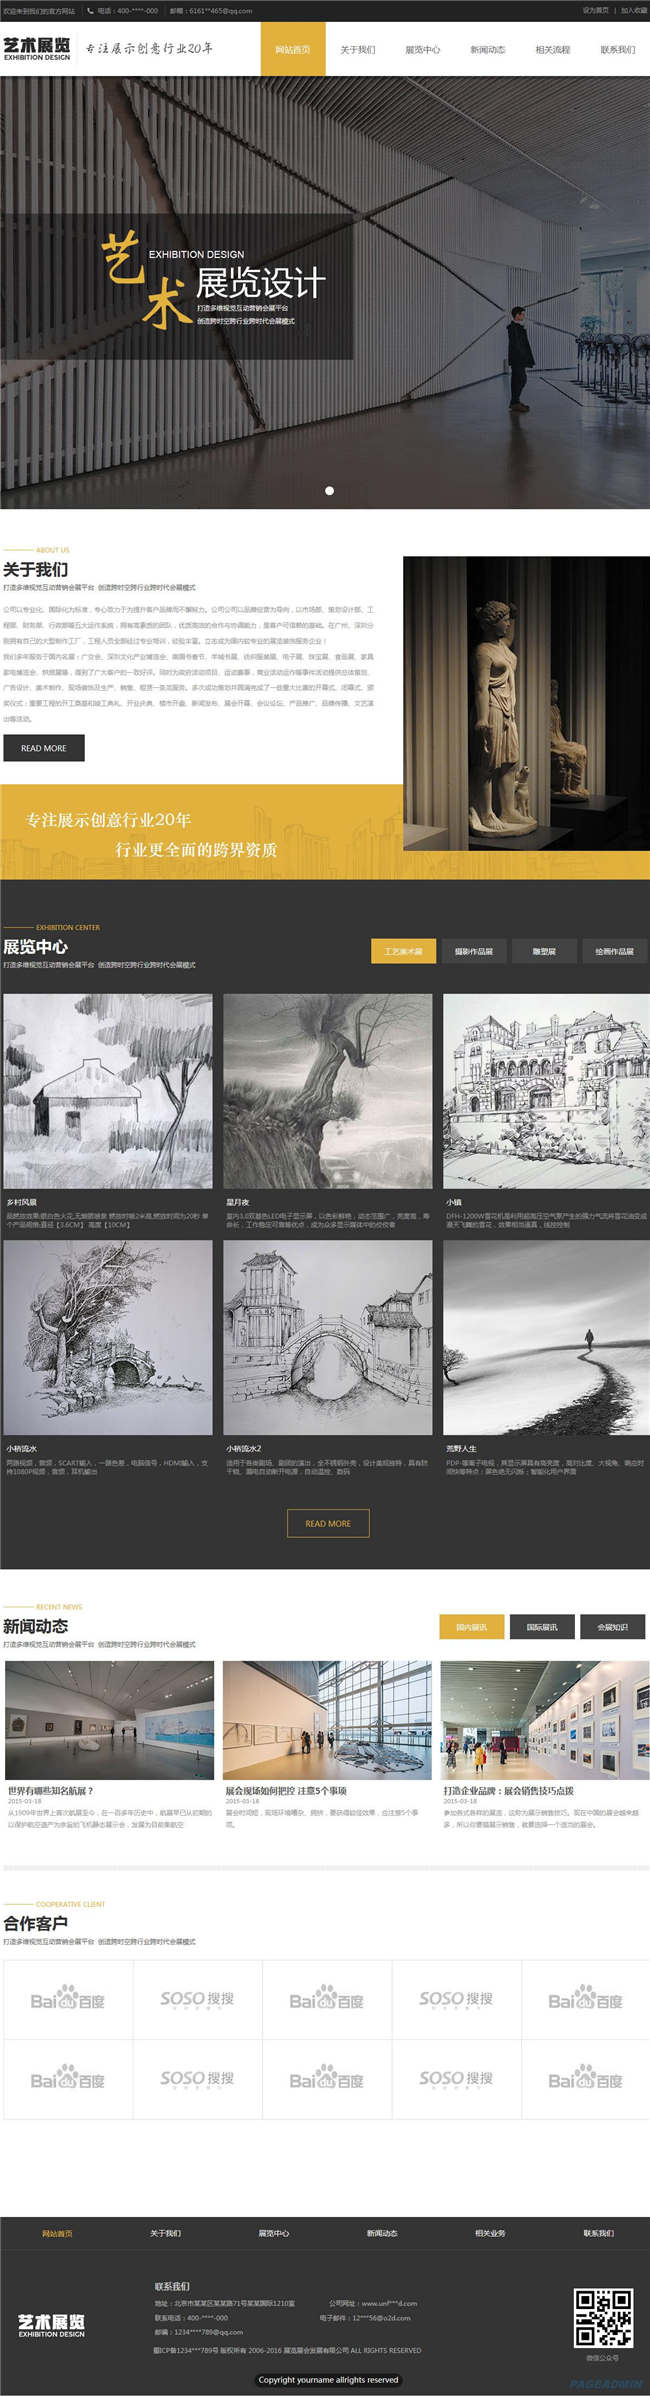 艺术展览企业广告传媒设计展览网站WP整站模板(含手机版)预览图